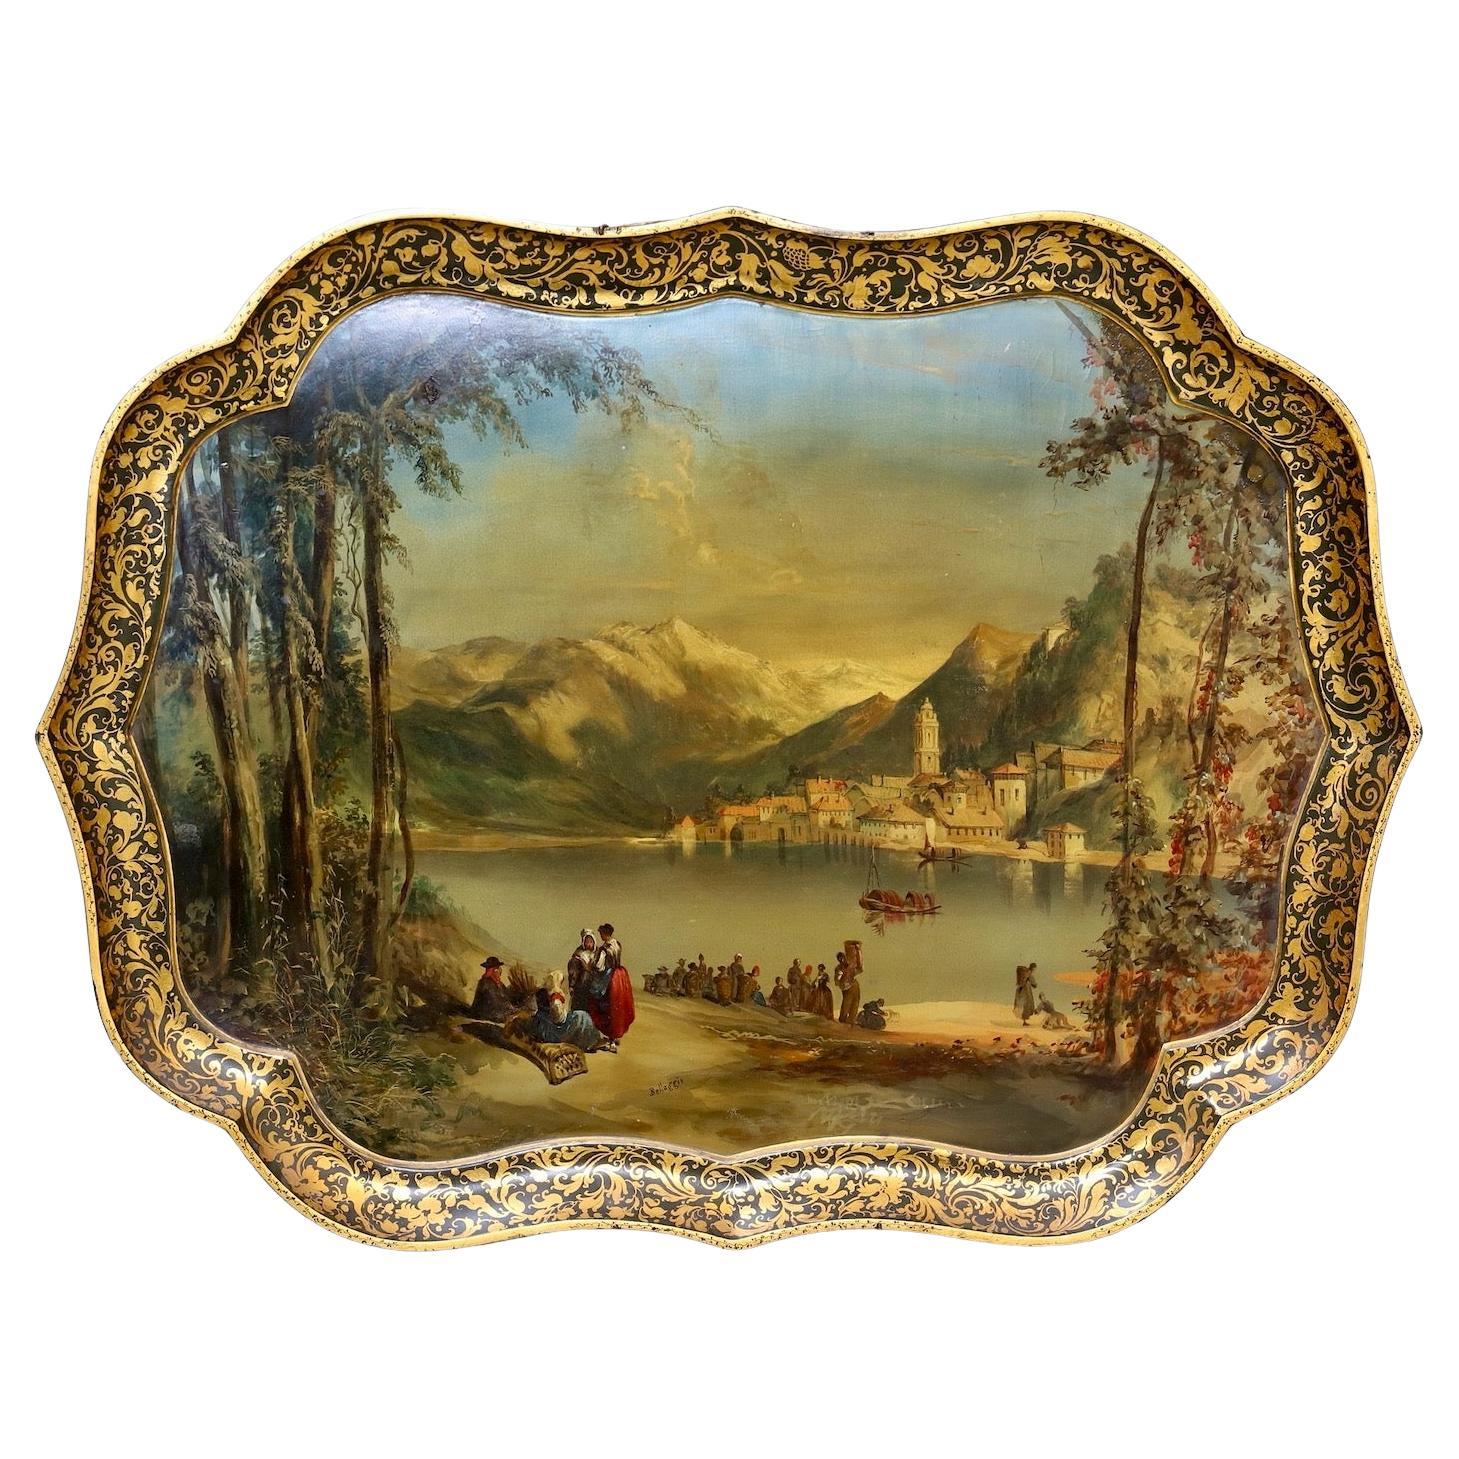 Jennens & Bettridge-Tablett aus dem 19. Jahrhundert mit Blick auf Bellagio, Como-See